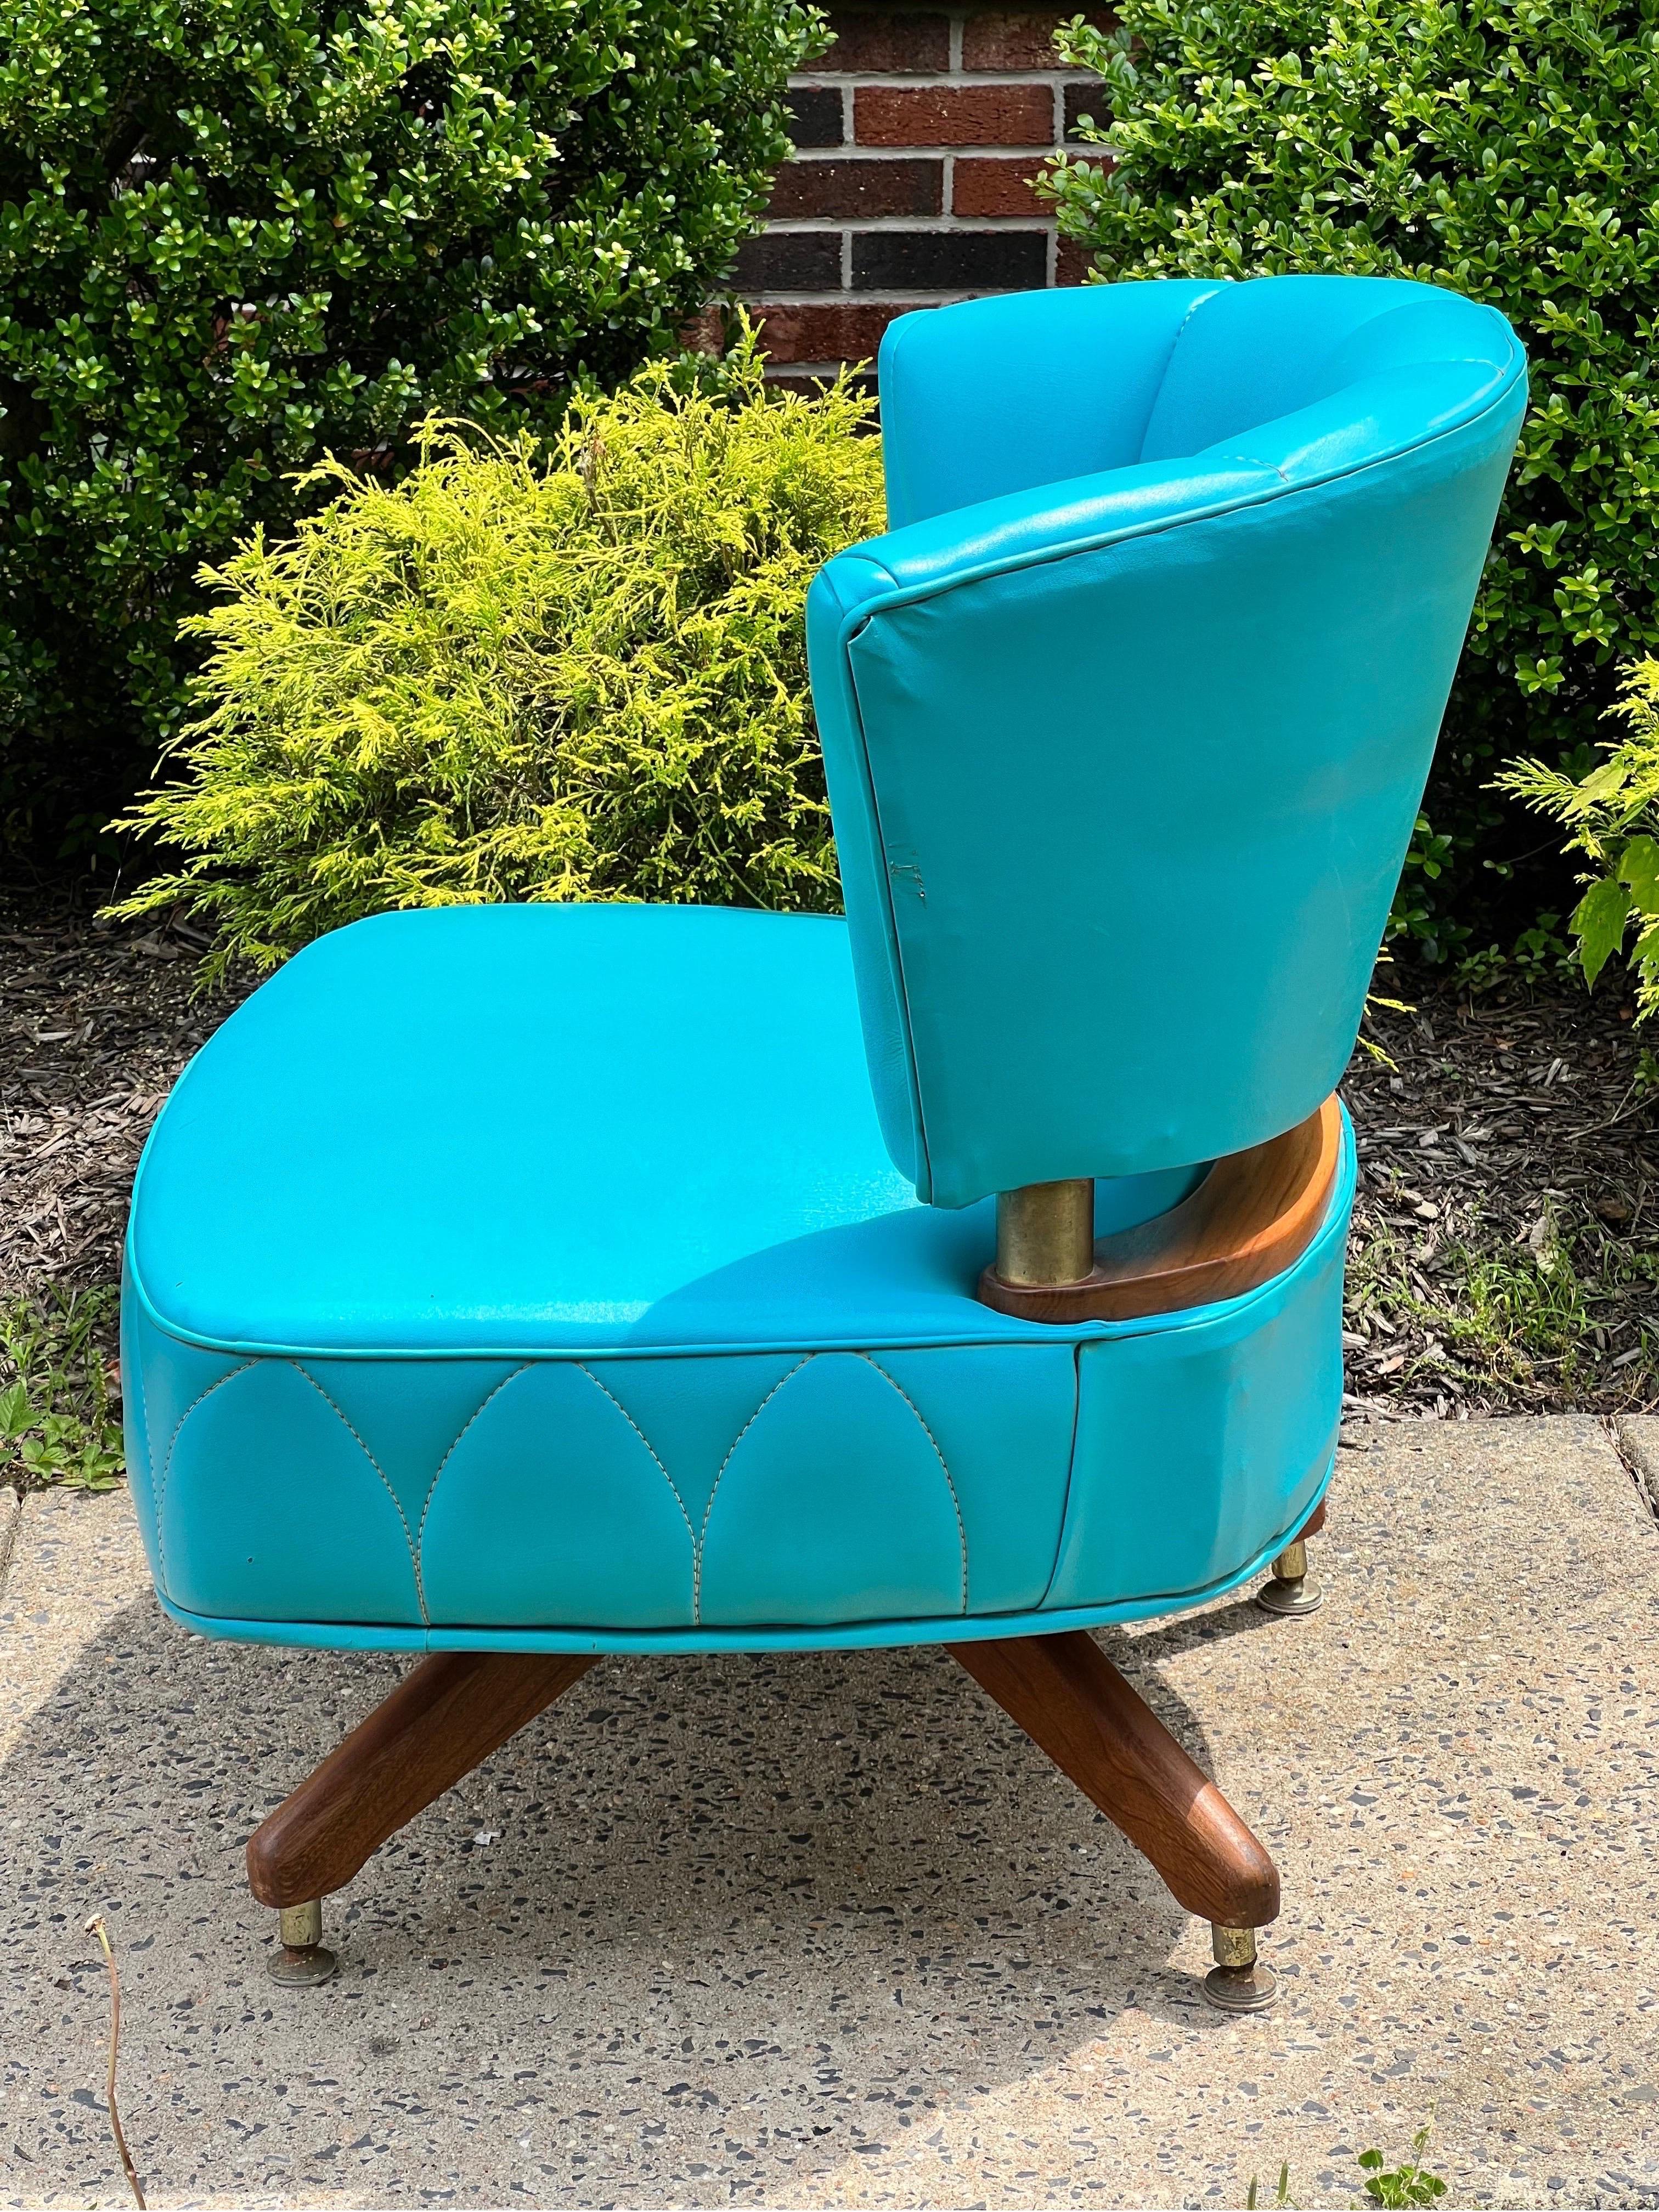 Fabelhafter Vintage-Drehsessel von Kroehler, 1962.

Ein wunderschöner Stuhl, gepolstert in einem leuchtenden Türkiston aus Kunstleder mit einzigartigem Nahtmuster. Die Farbe der Polsterung hat ihre Vitalität bewahrt und ist nicht verblasst. Der